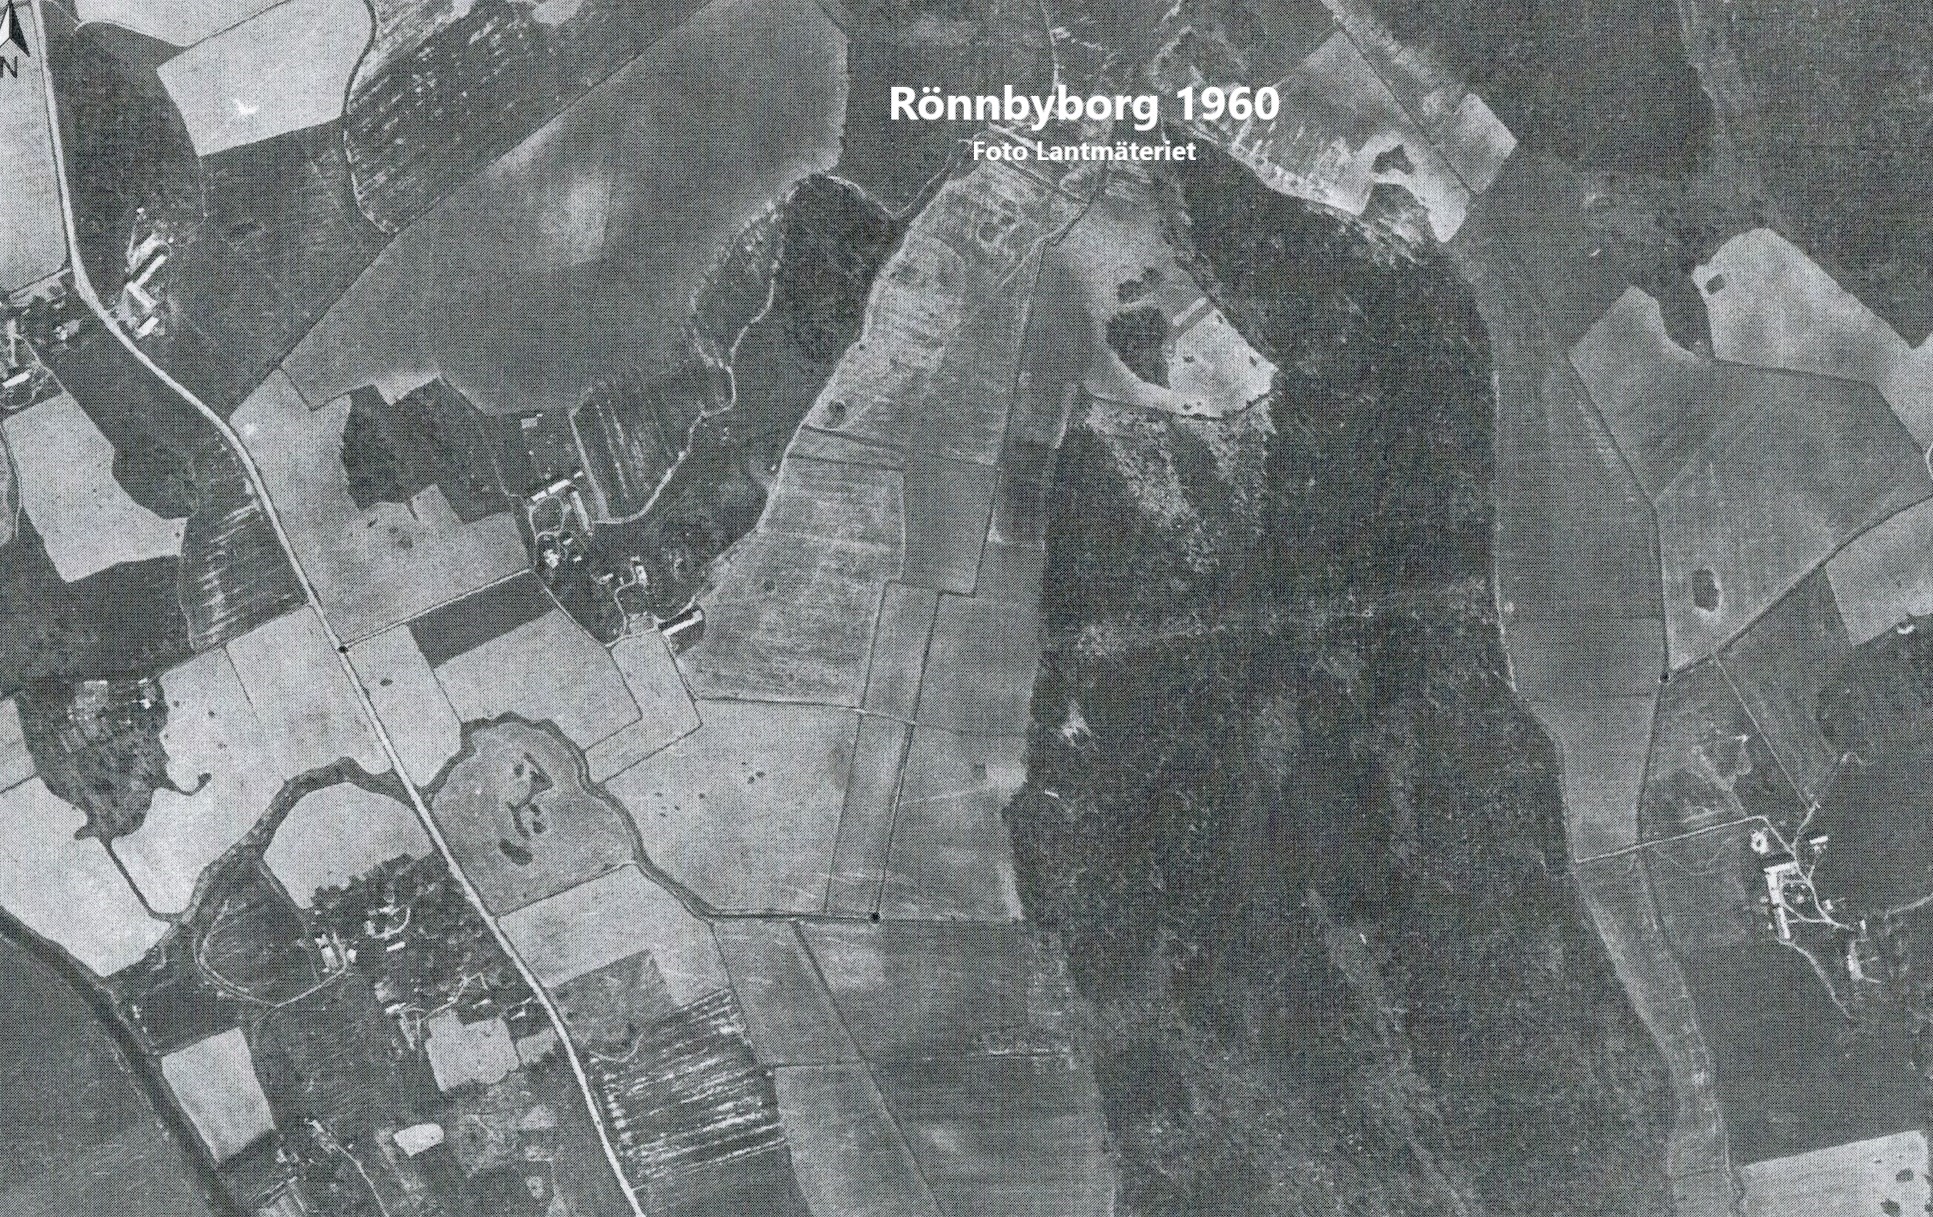 Rönnbyborg 1960